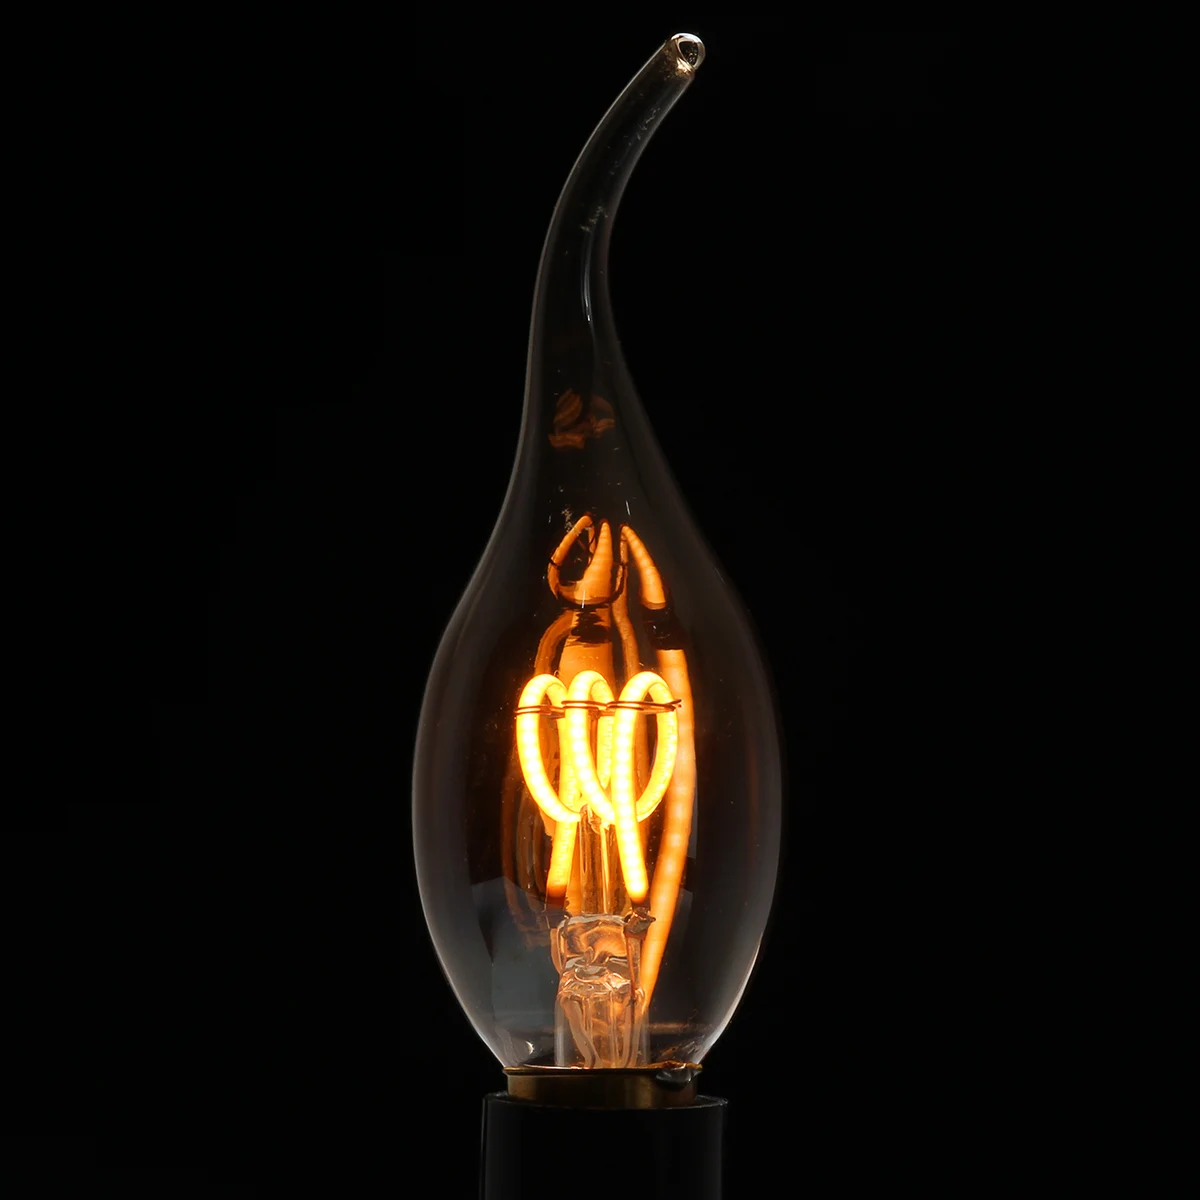 4 шт. цвета: золотистый оттенок E14 Эдисон светодиодный ламп накаливания C35 Винтаж спираль лампа теплый белый 2200 K мягкая гибкая нить Cob Светодиодная лампа с регулировкой